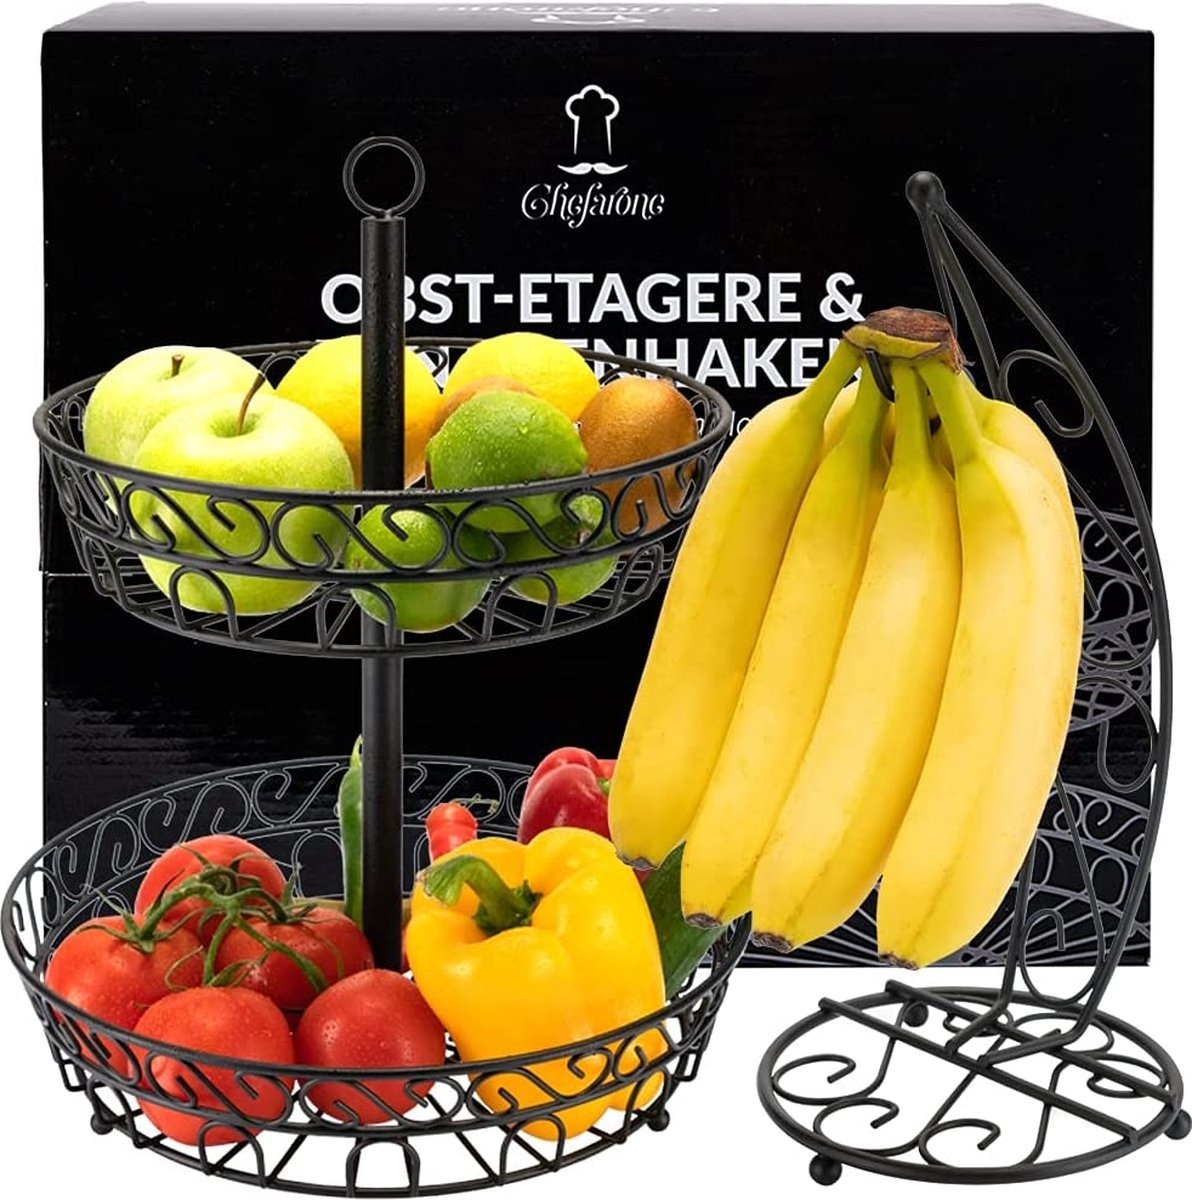 Chefarone Obst-Etagere mit Bananenständer - Obstkorb - Bananenhalter - Obstschale - Gemüsekorb - 2 Schichten - Metall - 